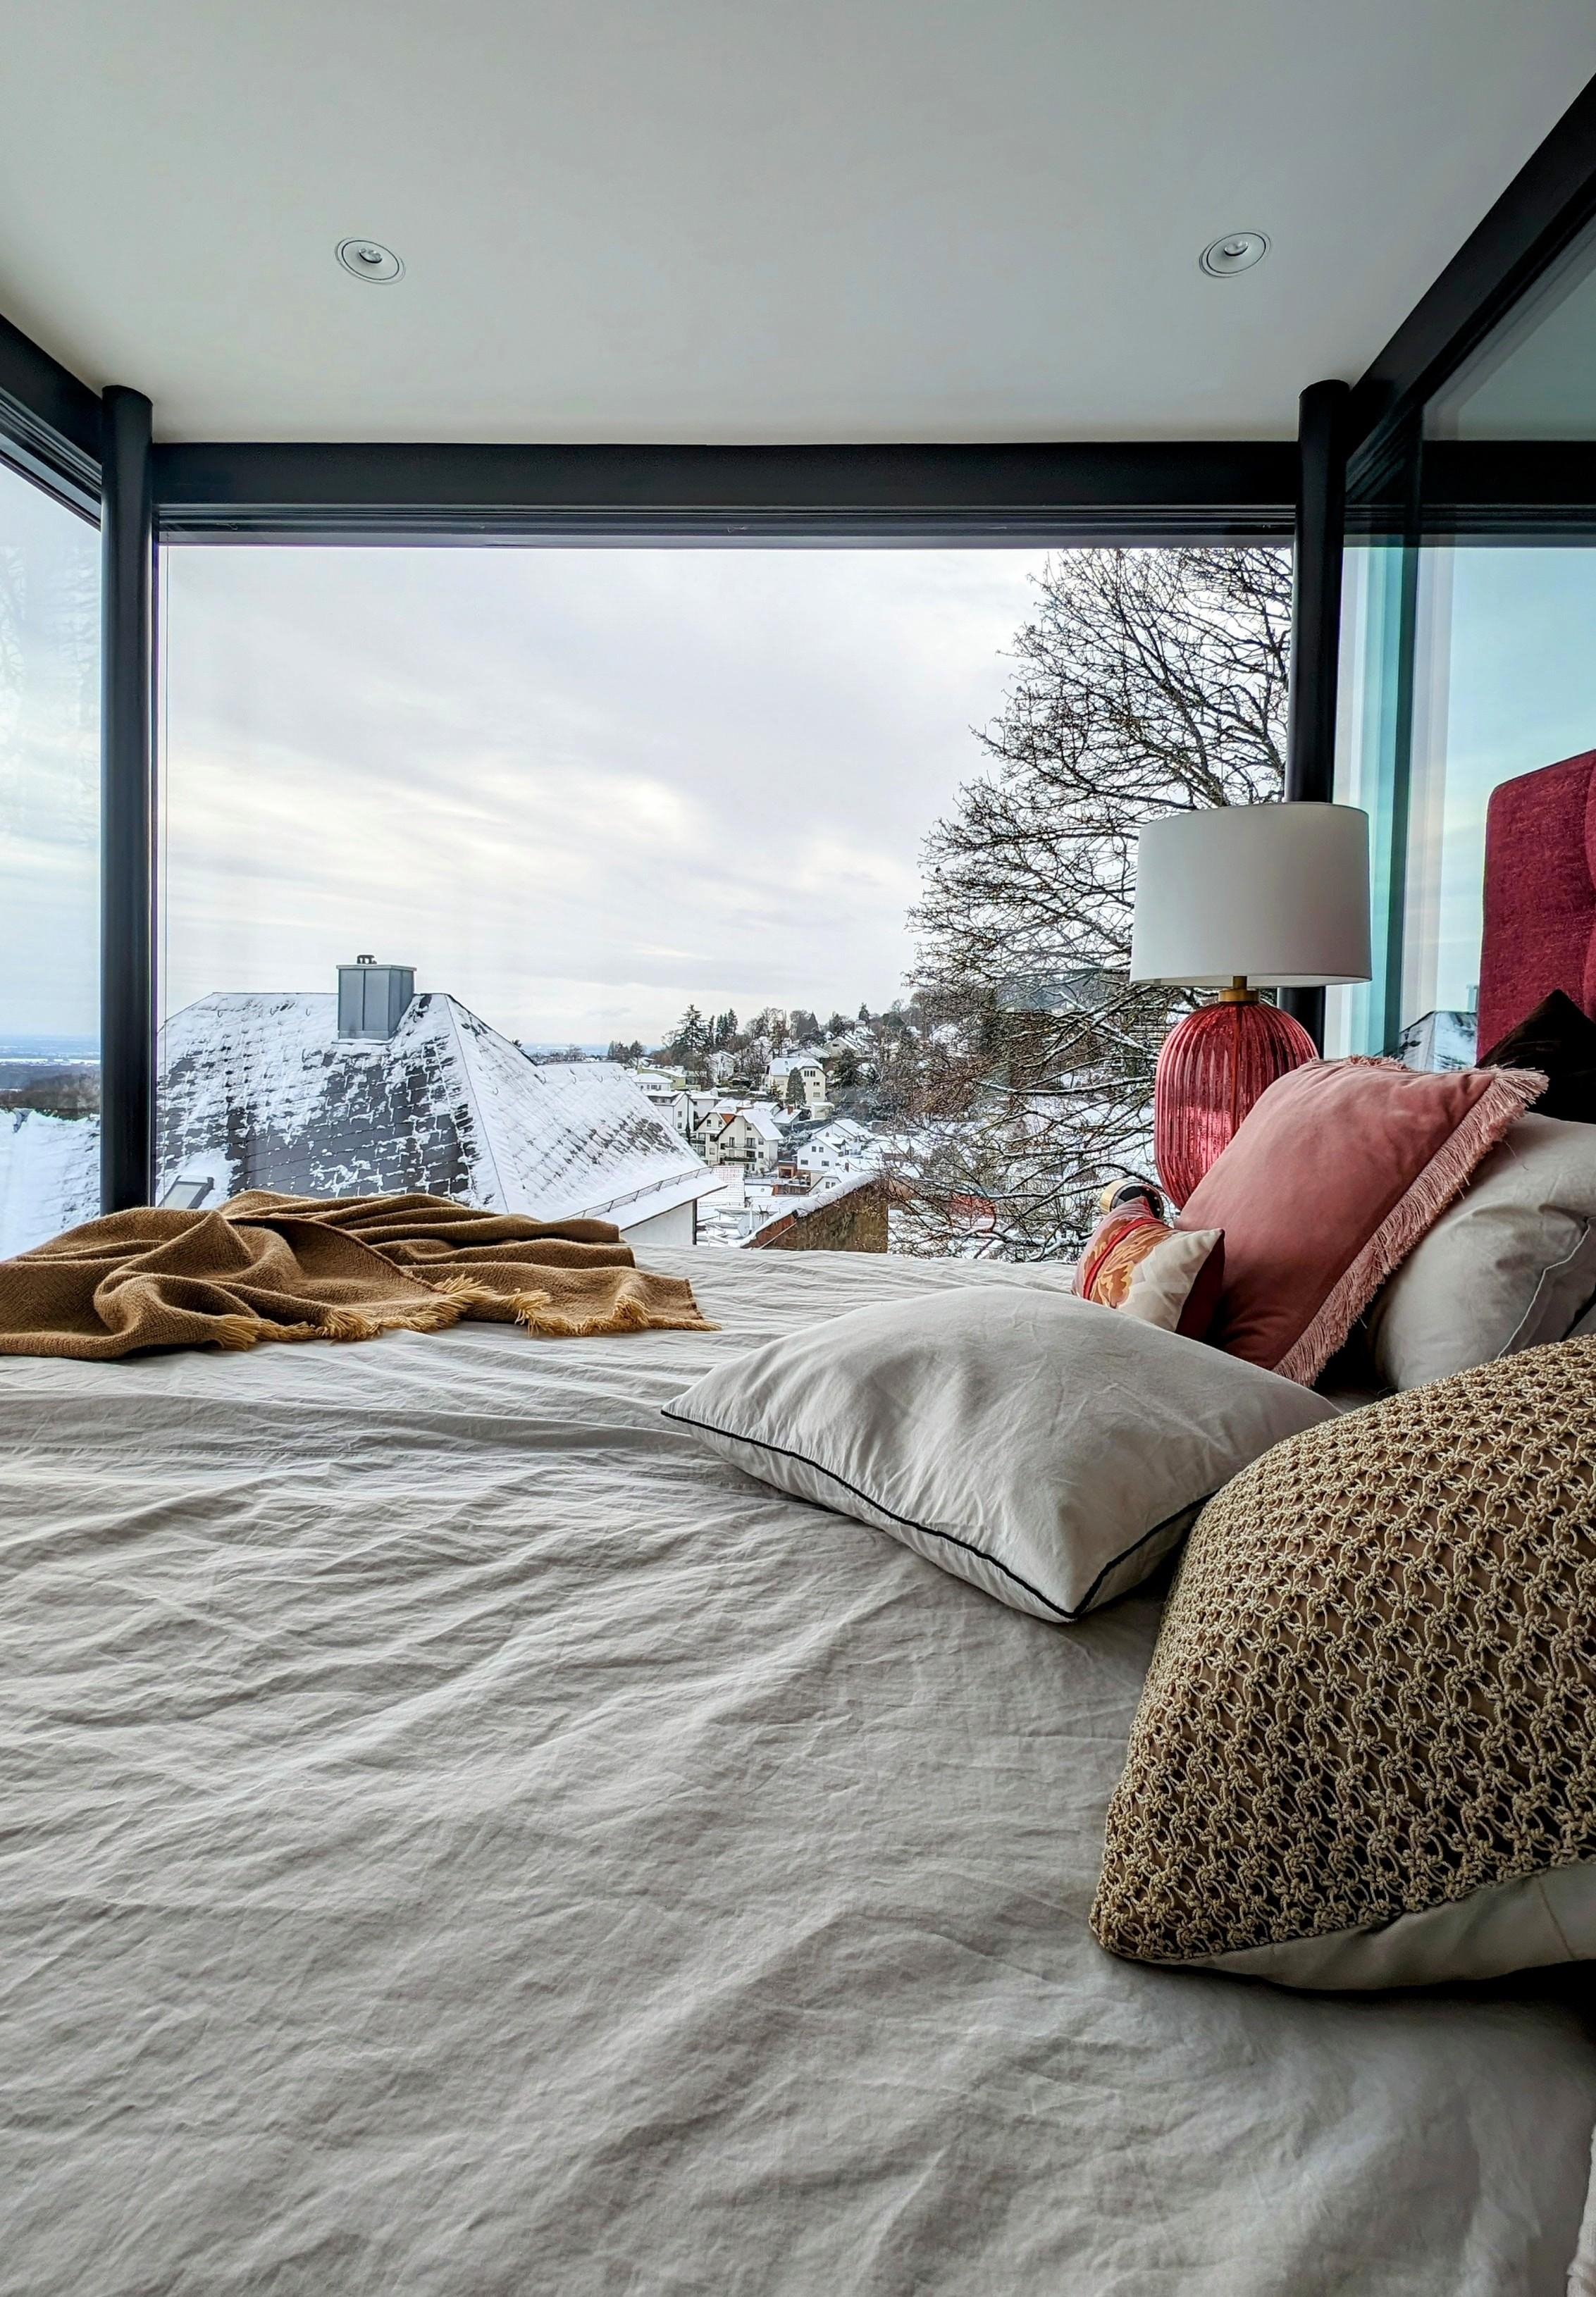 #schlafzimmer #ausblick #anbau #interiordesign #interiordesigner